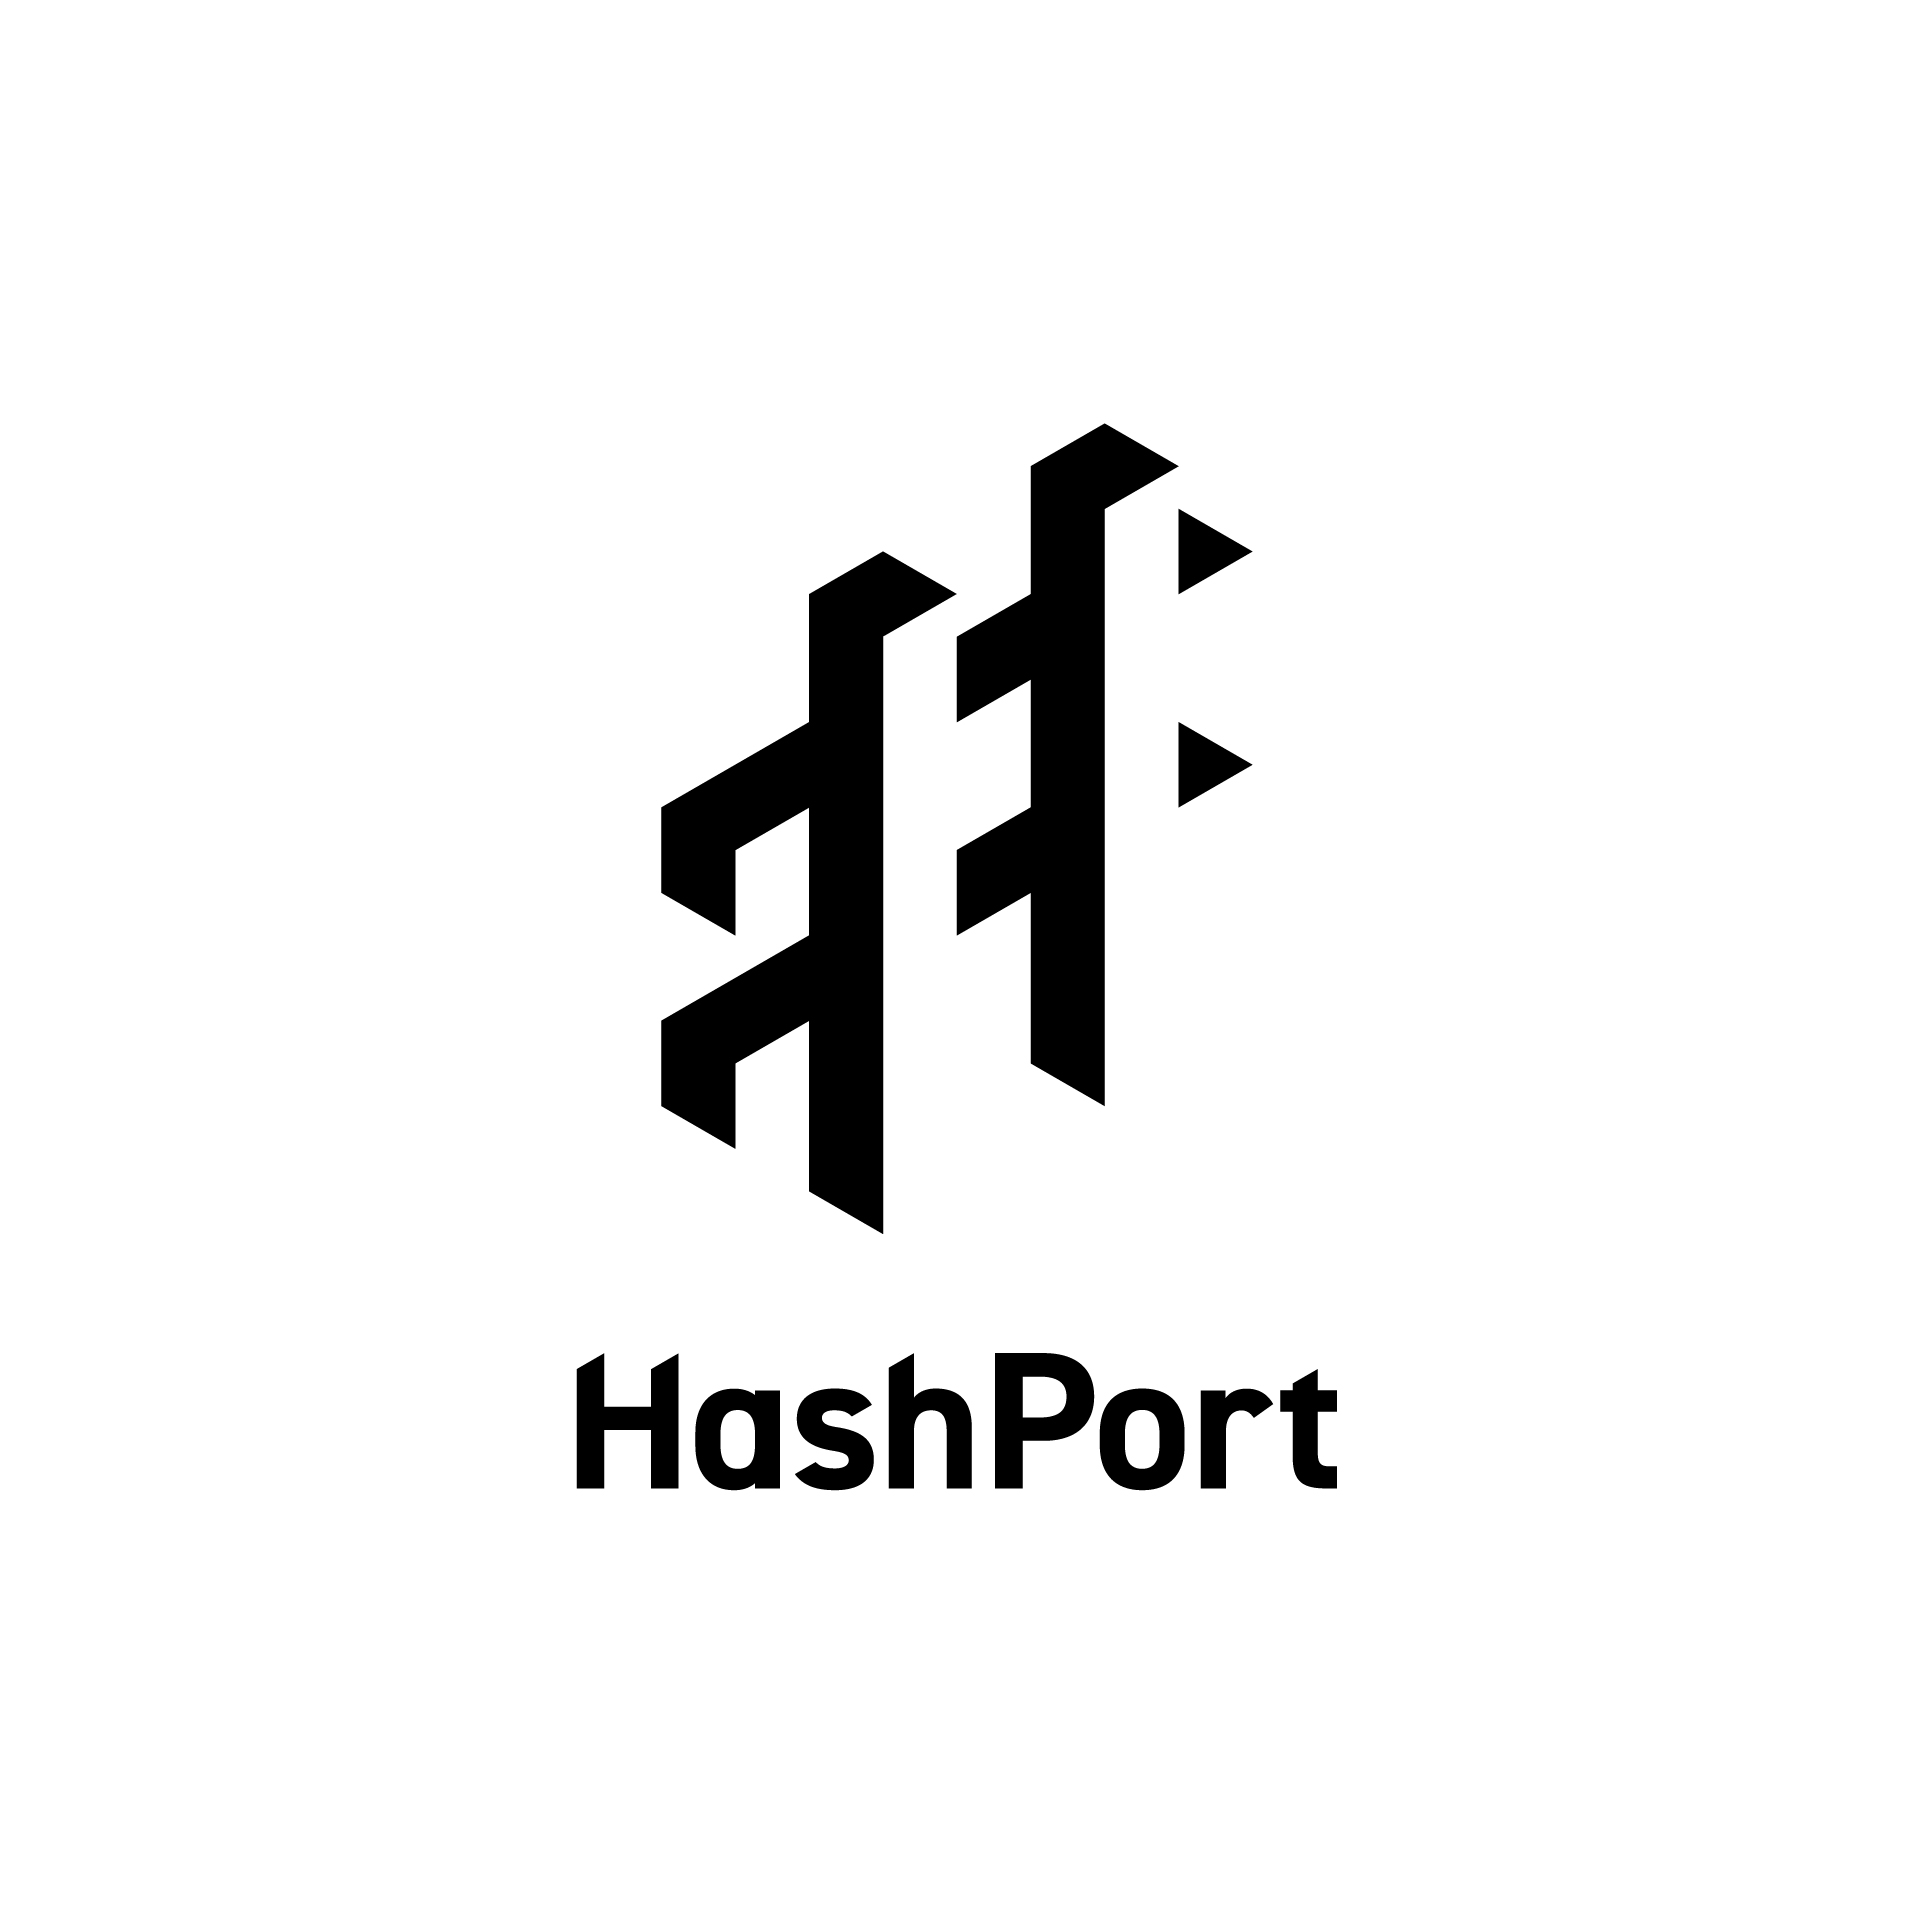 HashPort：ロゴマーク